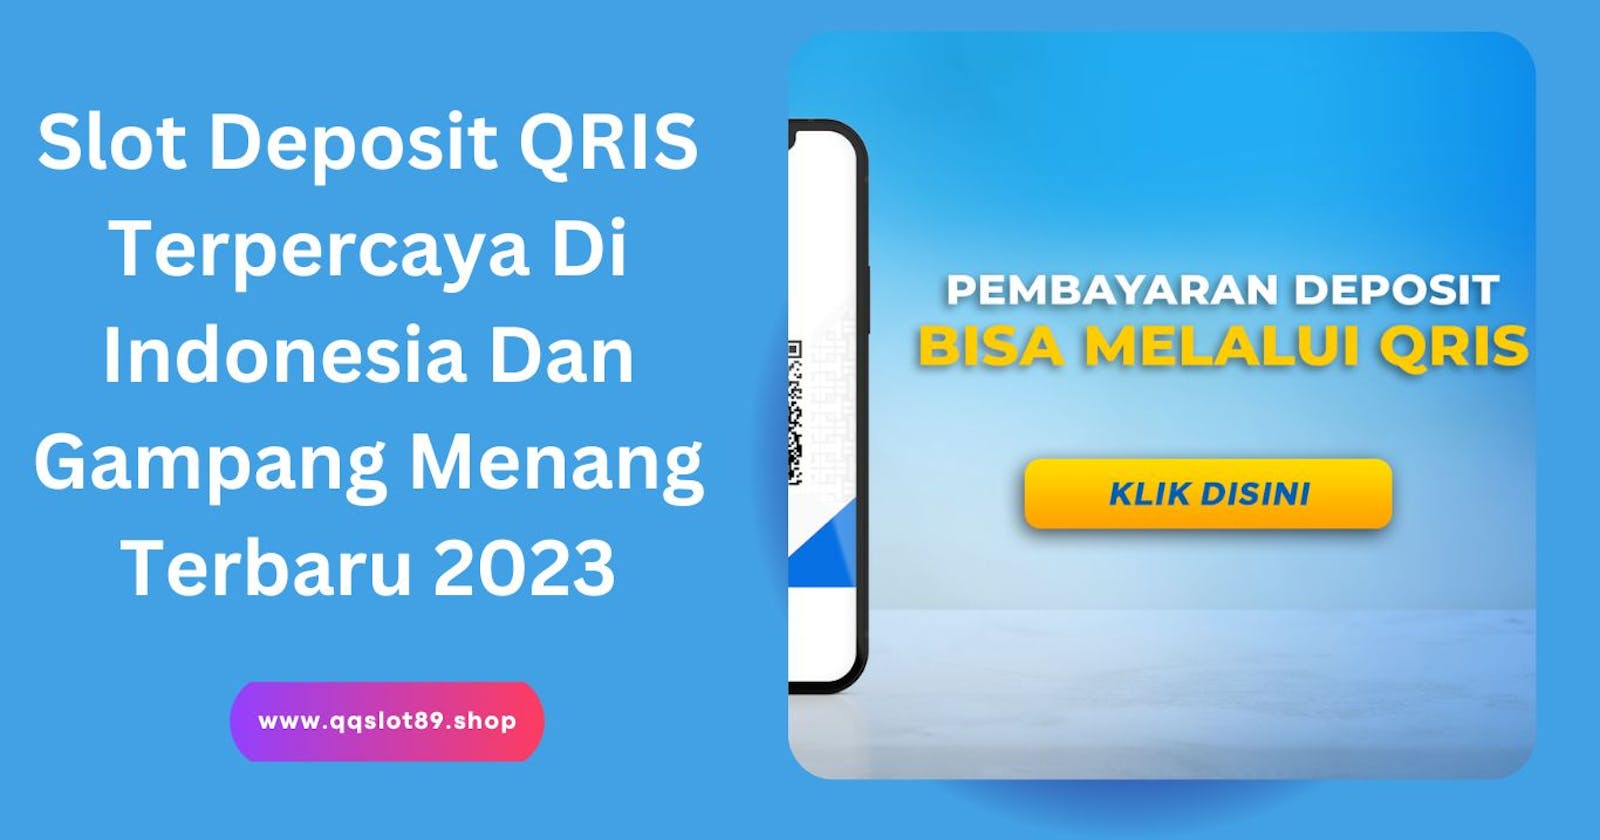 Slot Deposit QRIS Terpercaya Di Indonesia Dan Gampang Menang Terbaru 2023